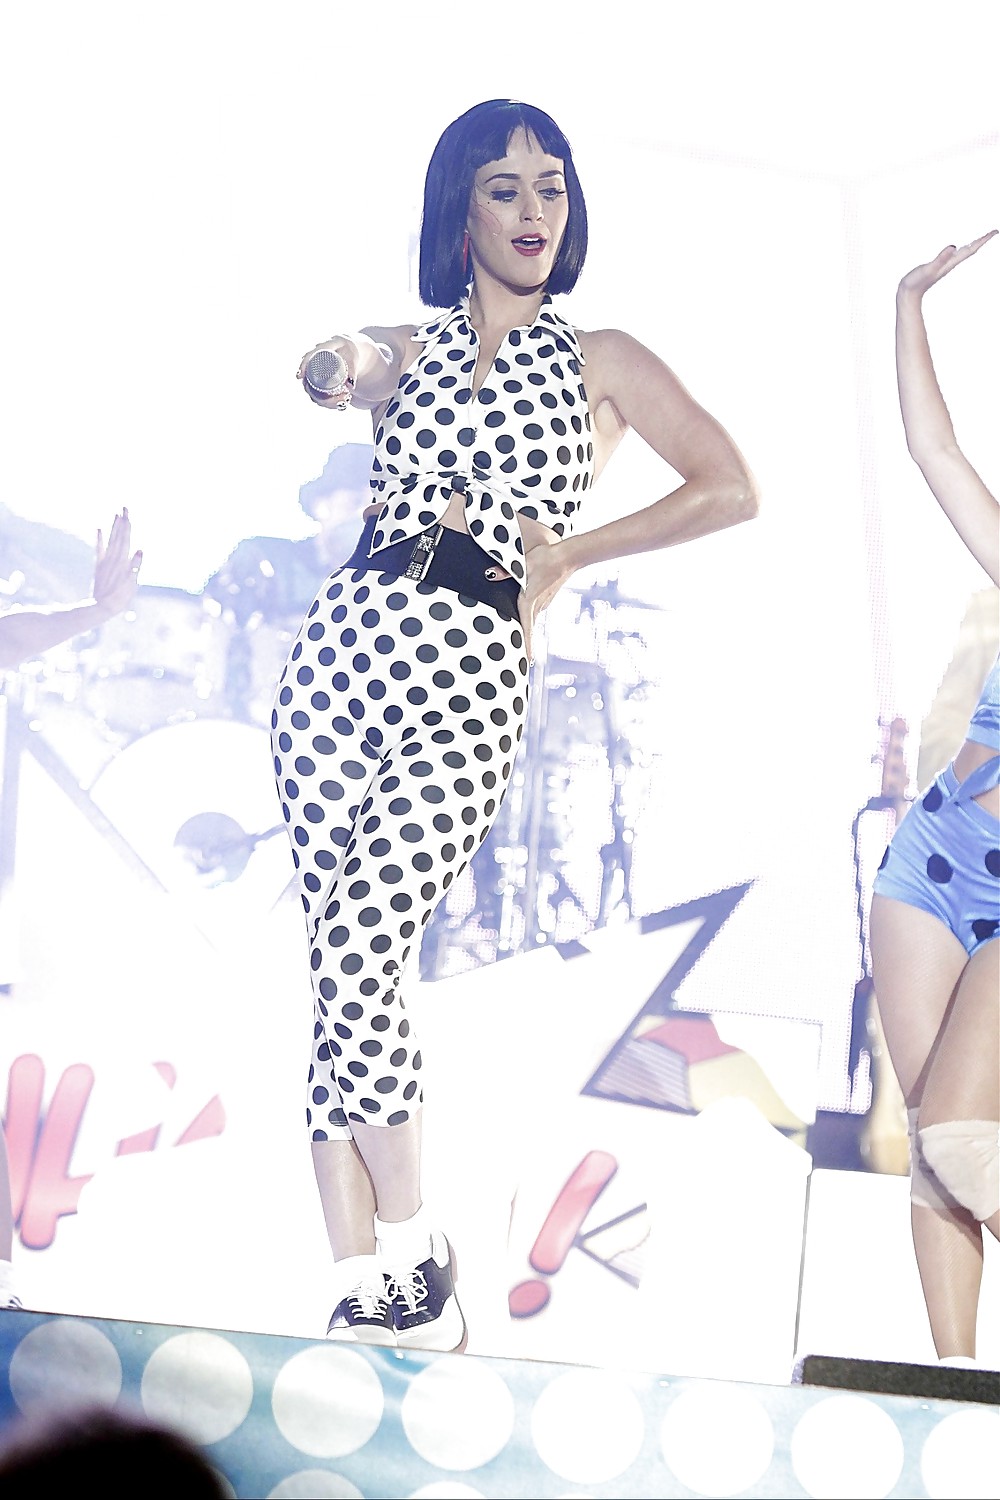 Le Cul De Katy Perry #3246551